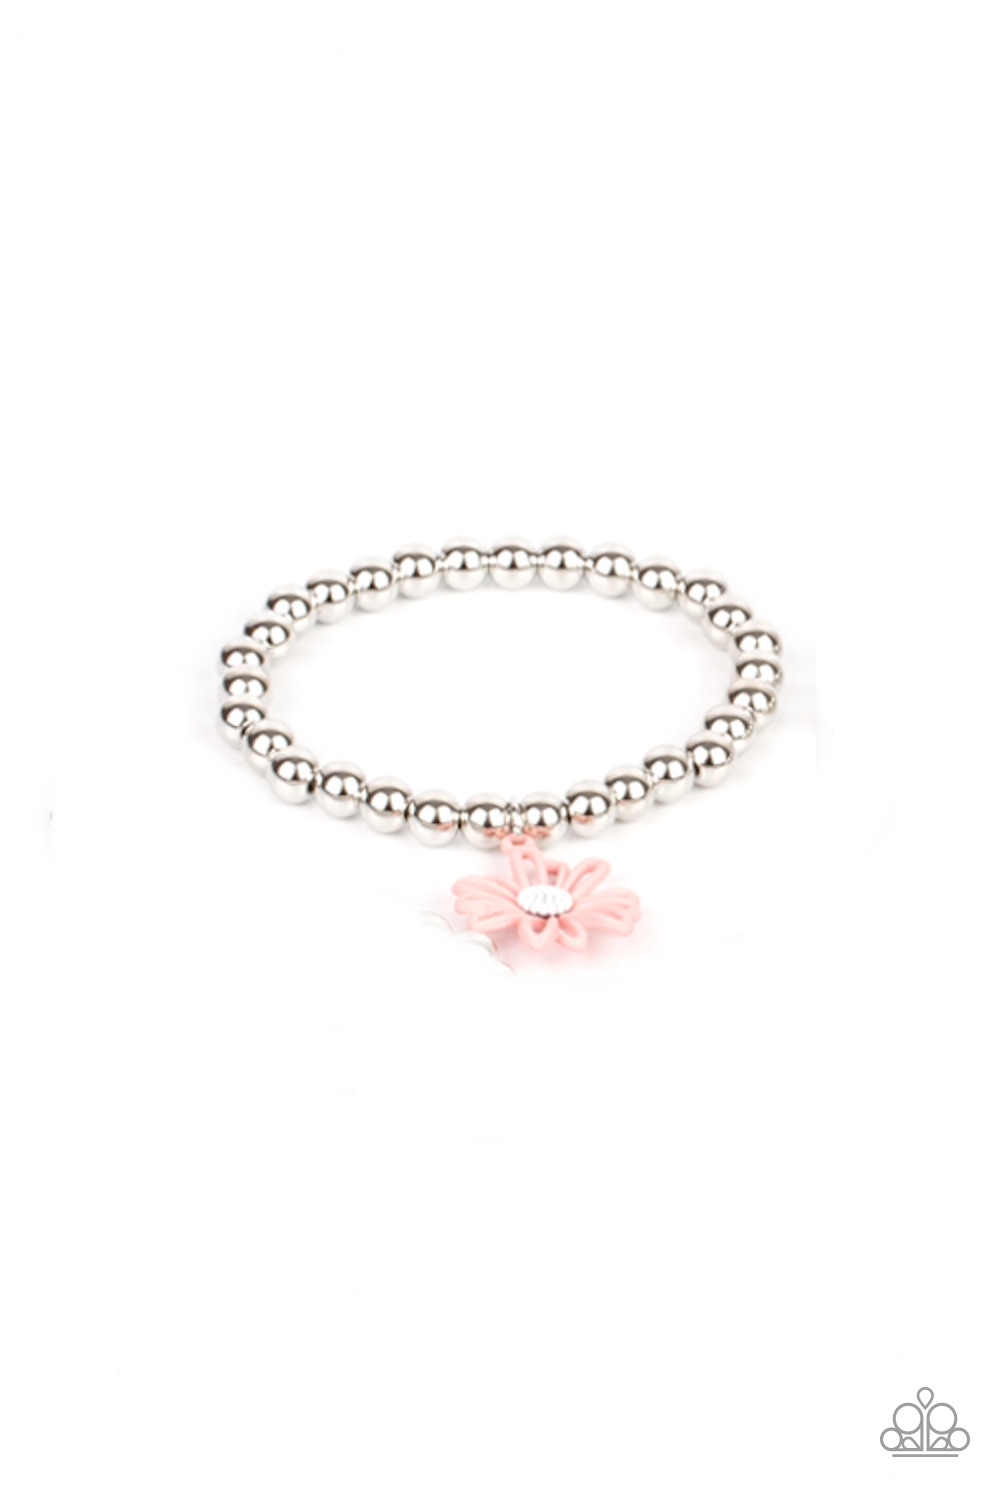 Bracelet - Starlet Shimmer Flowers - Pink